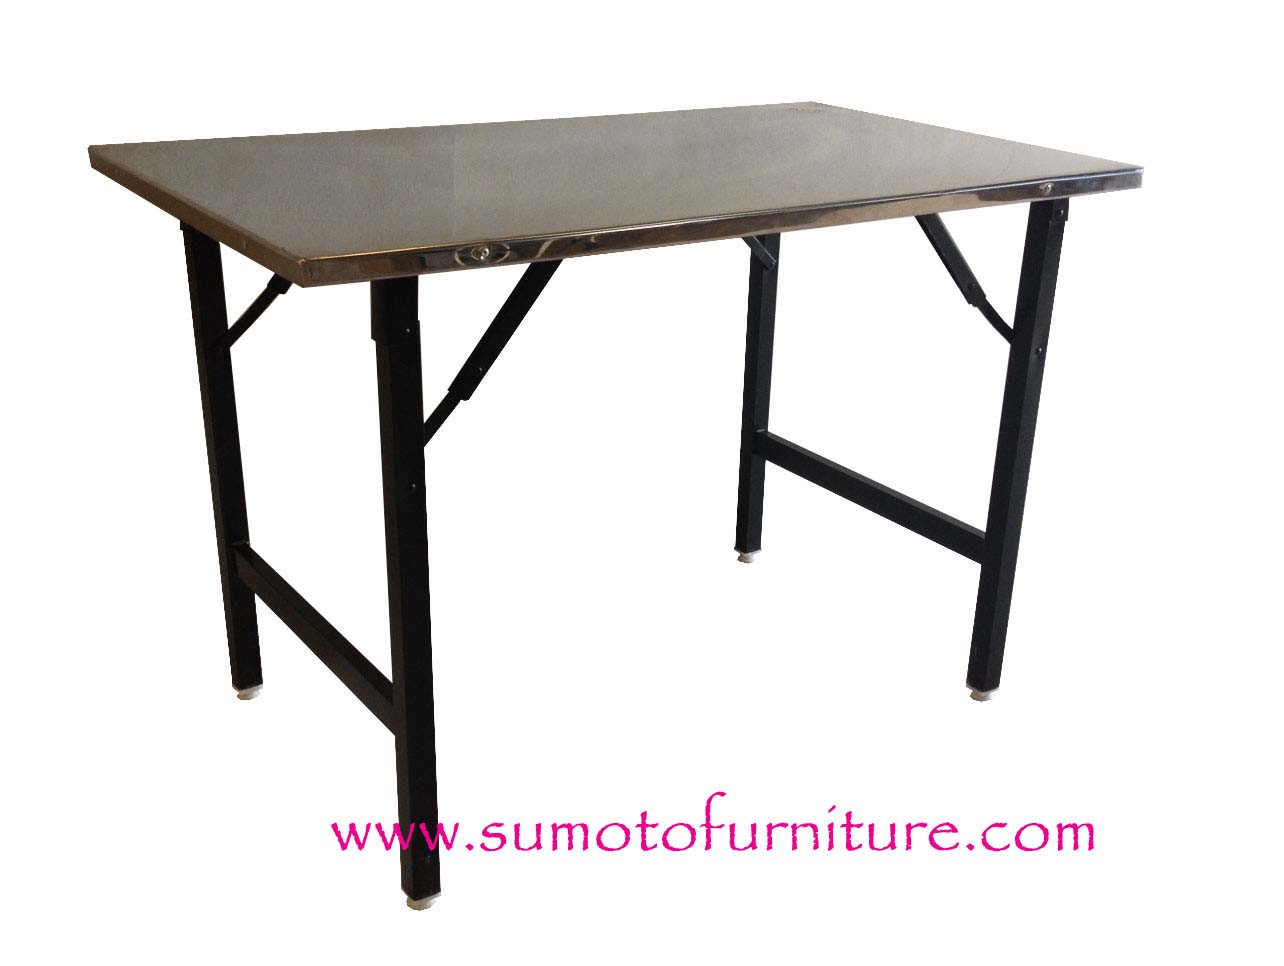  ԵШ˹ ա- ᵹ  С˹ ˹ Թᵹʵҧ ԹҾʵԡ ҧ 
ID Line : sm5196 Tel. 094-661-5196                                                                Sumoto furniture